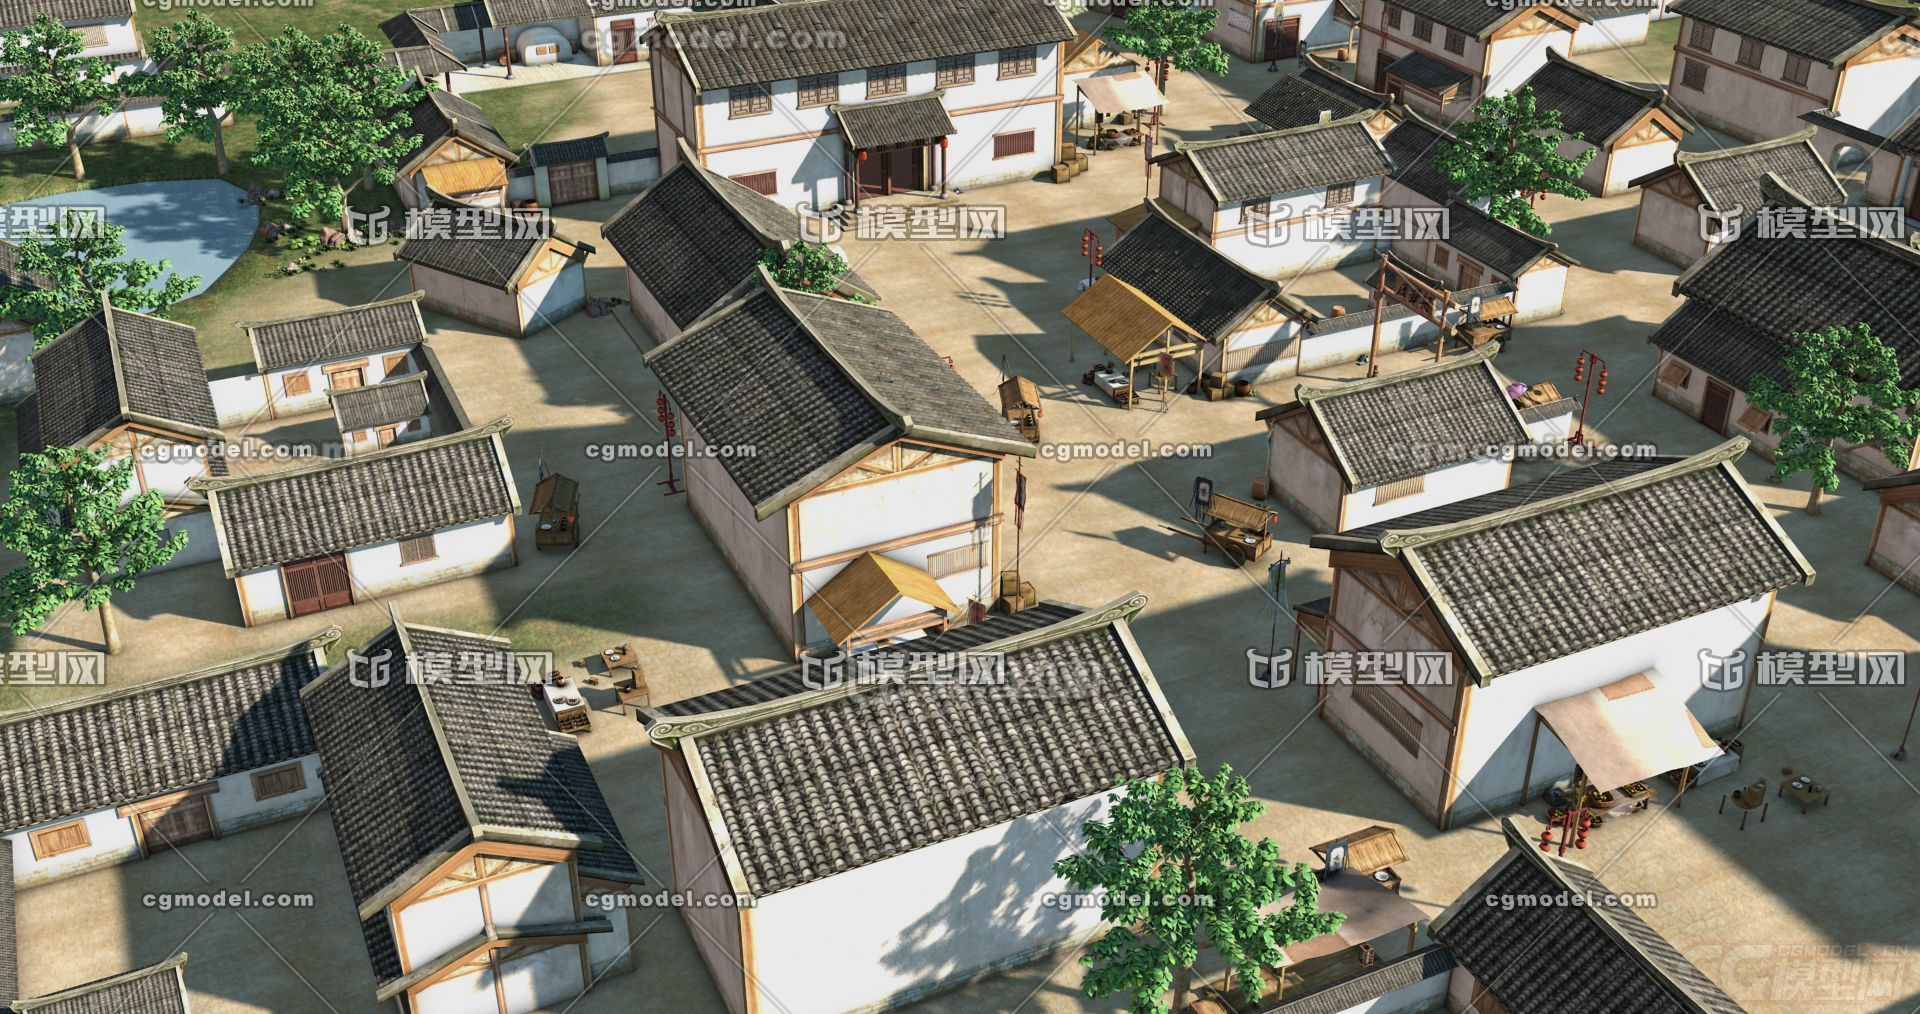 古代村落 古代村庄 民居 西华村,古建筑 影视级模型,有绑定